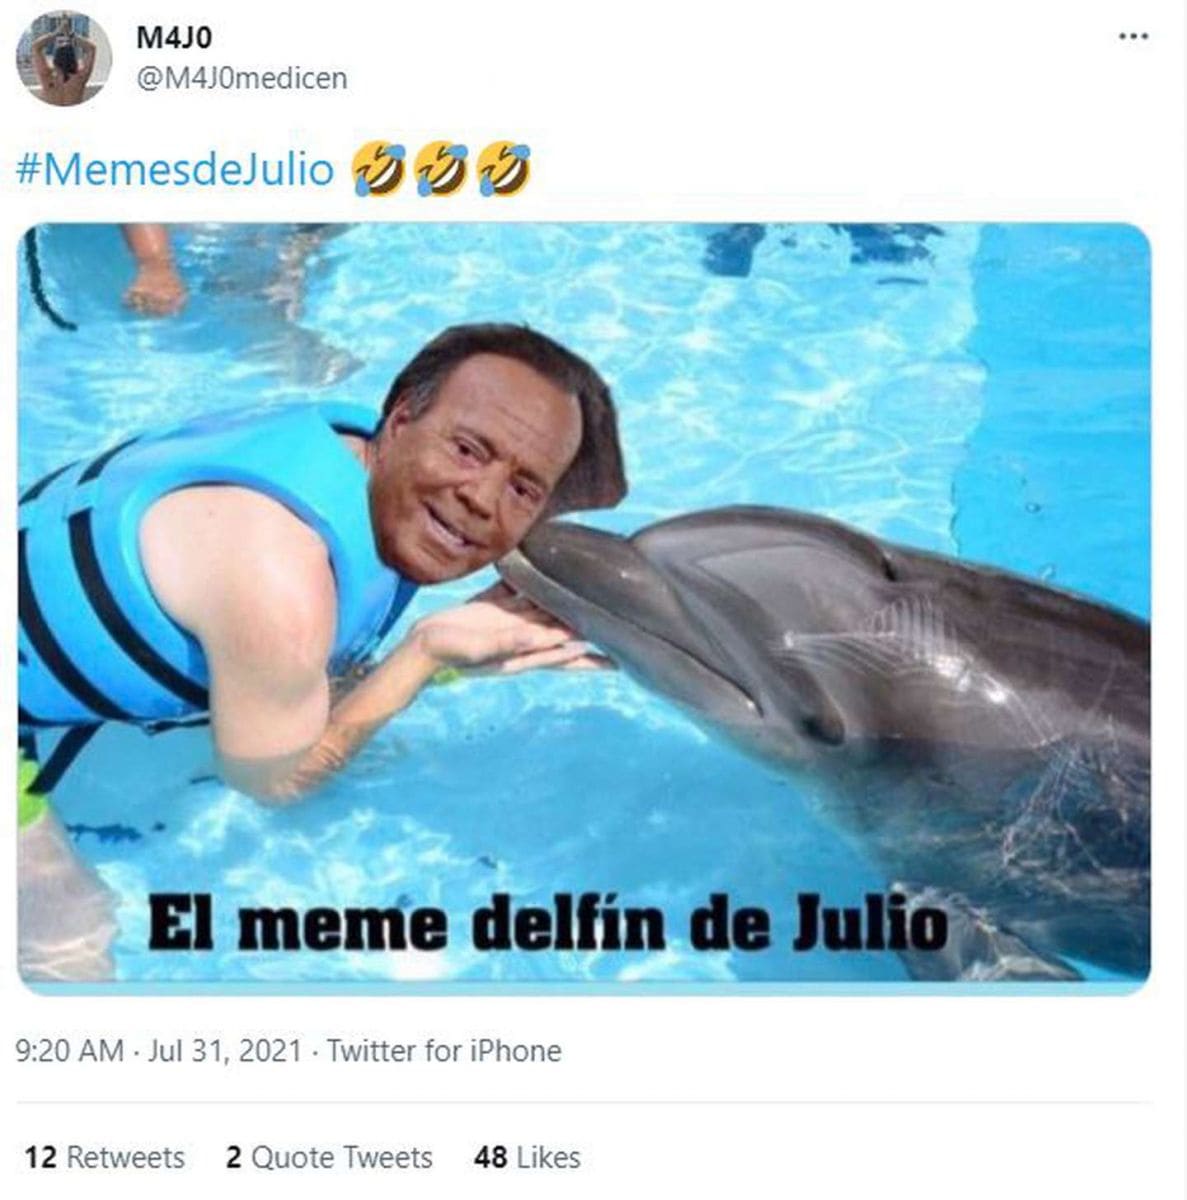  Memes de Julio: Risas y Reflexiones para Acompañar este Mes Especial